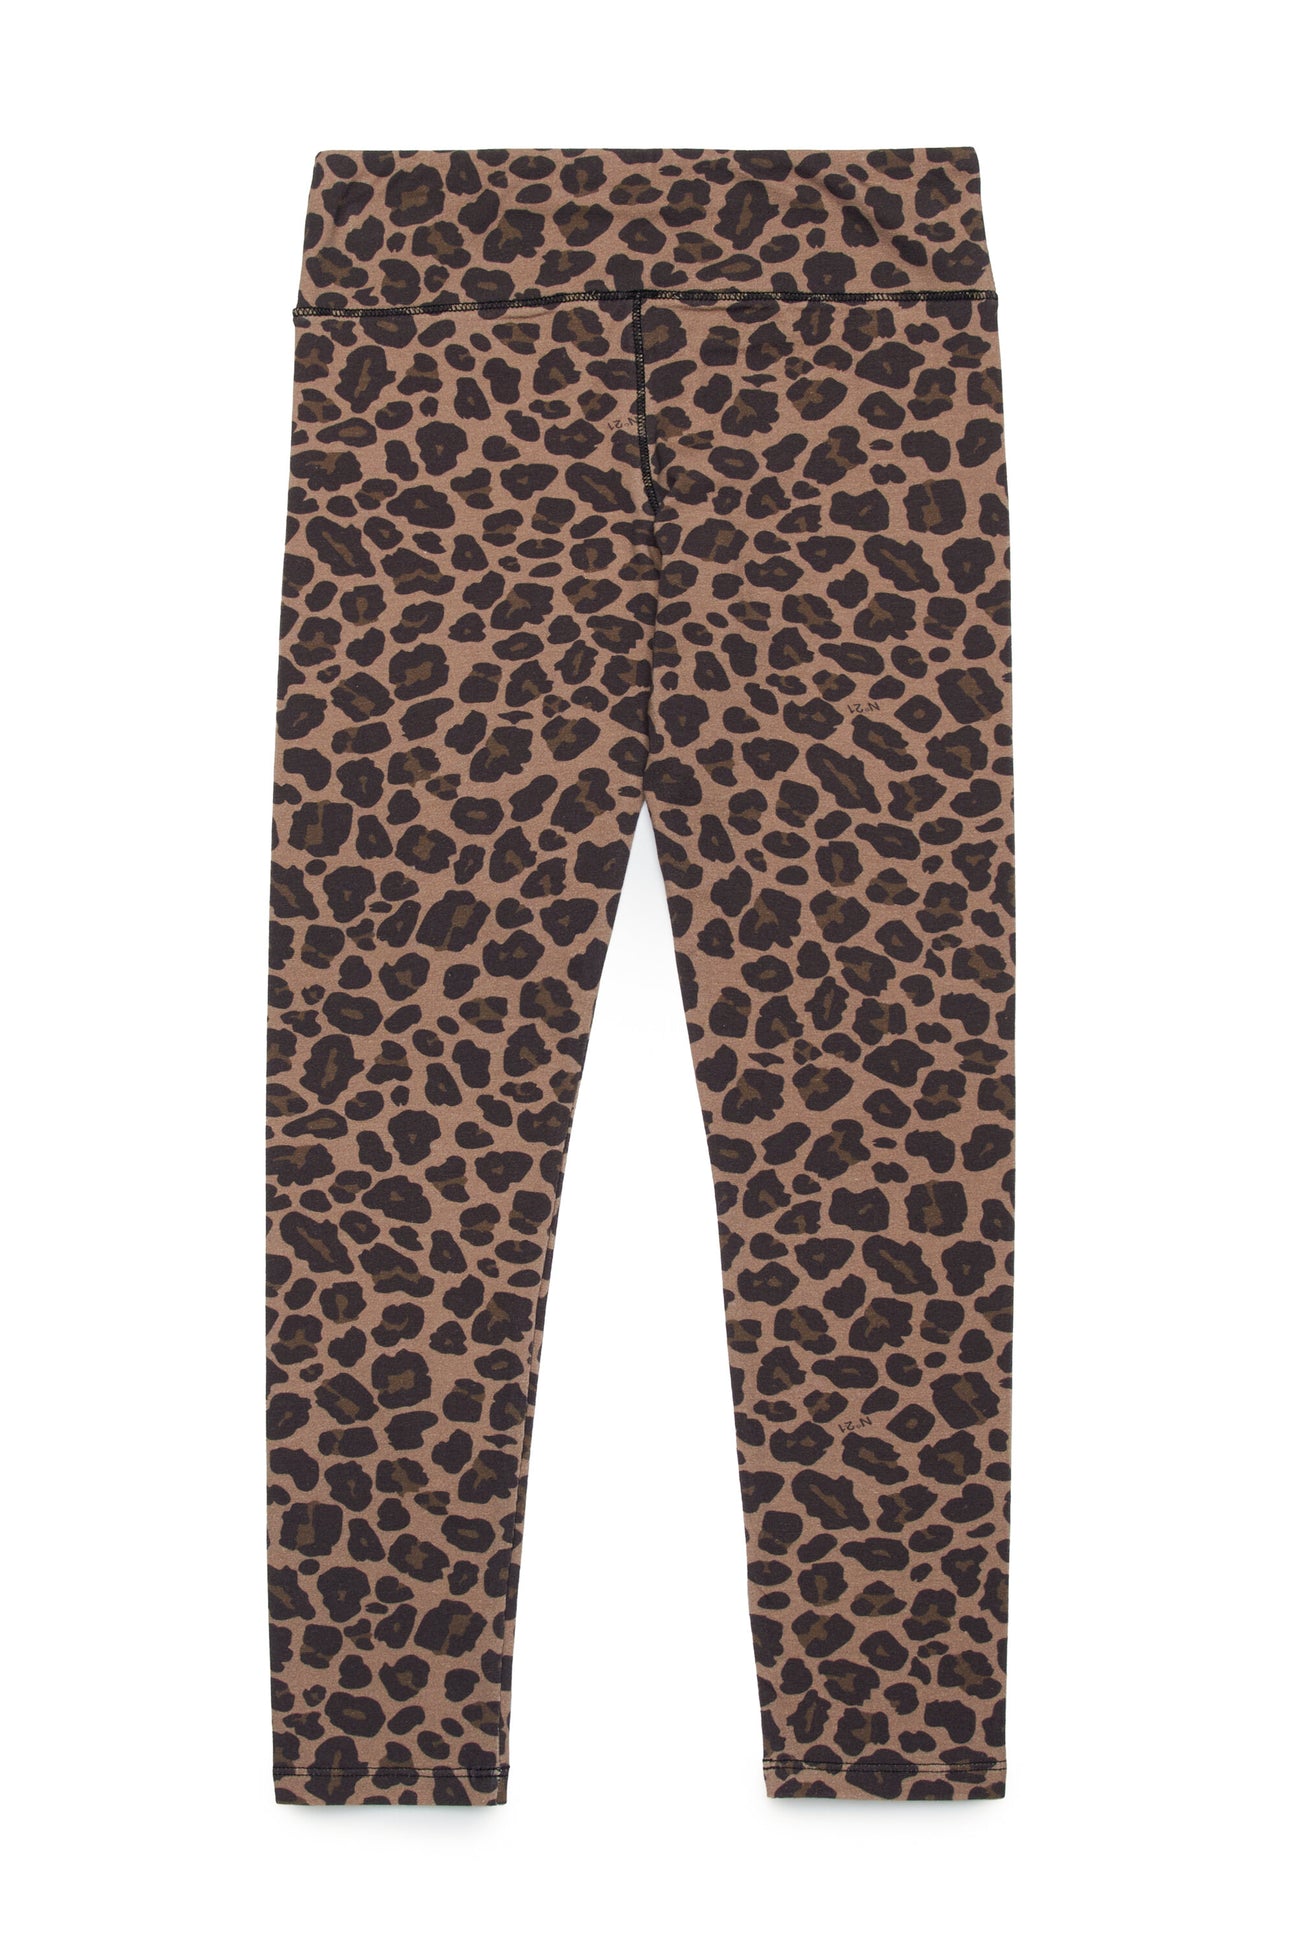 Leopard print leggings Leopard print leggings